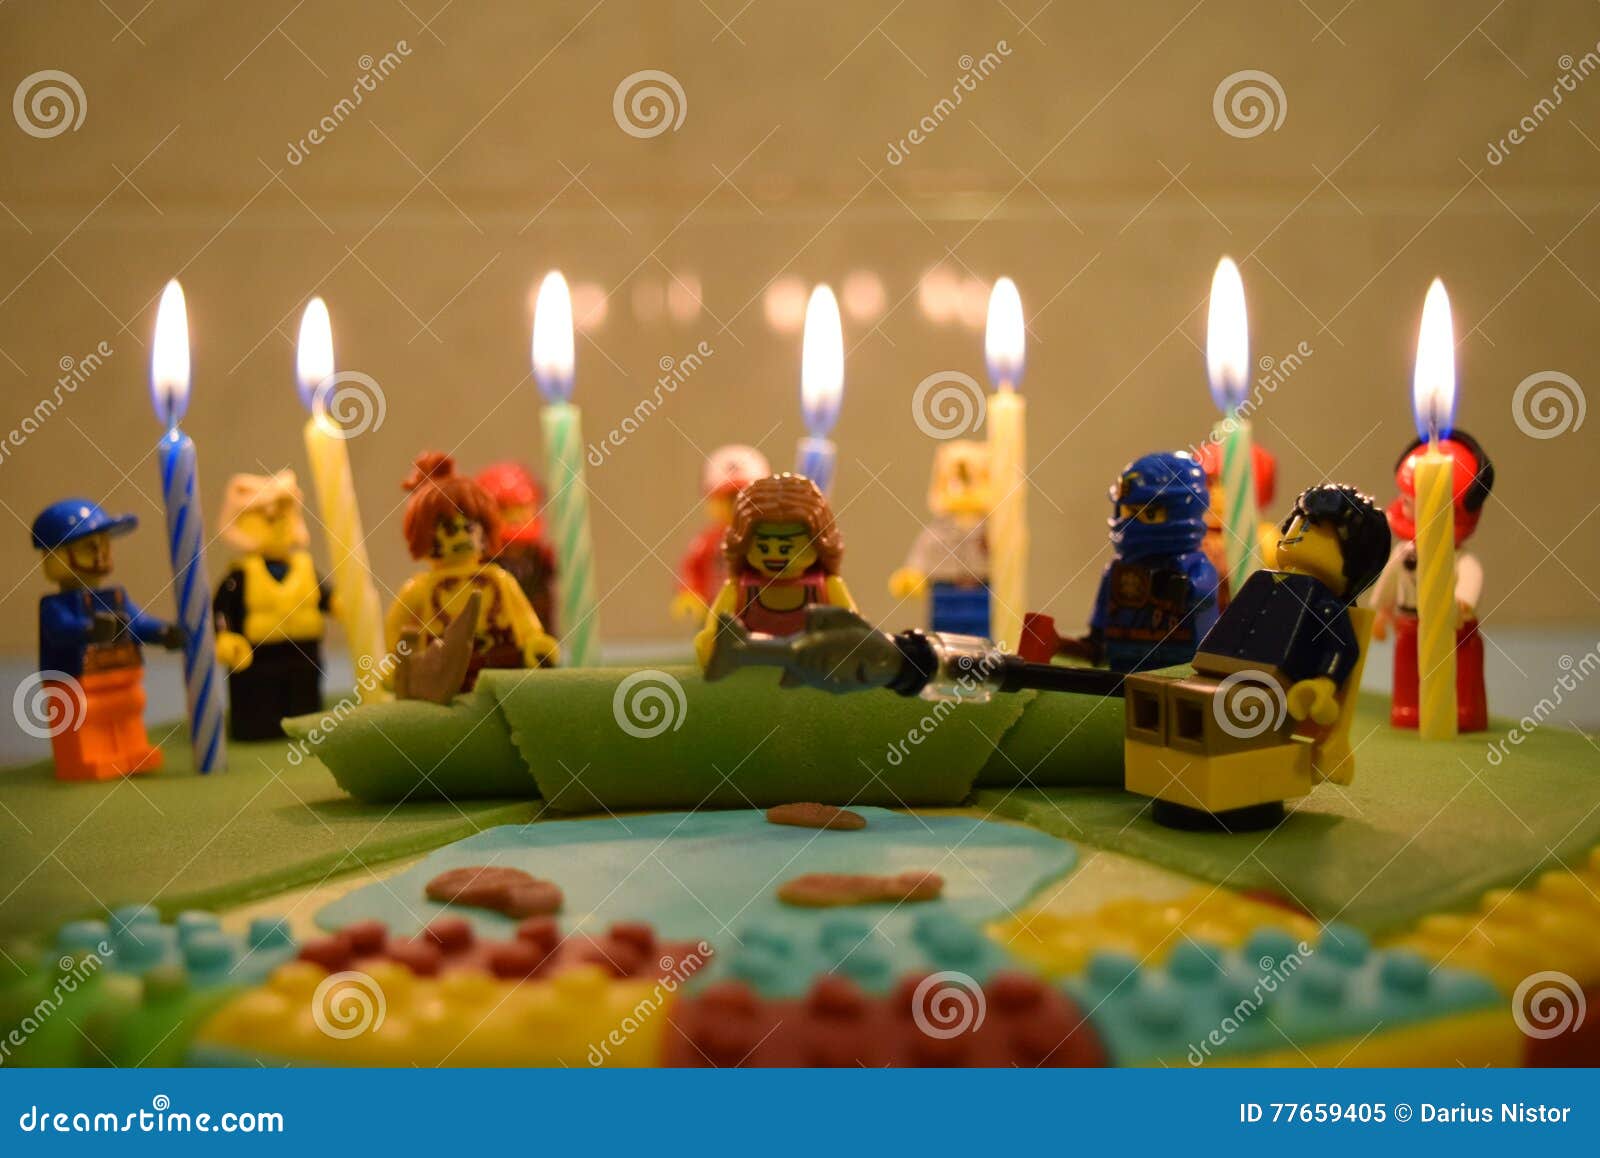 Louis Vuitton Orange Lego Birthday Cake